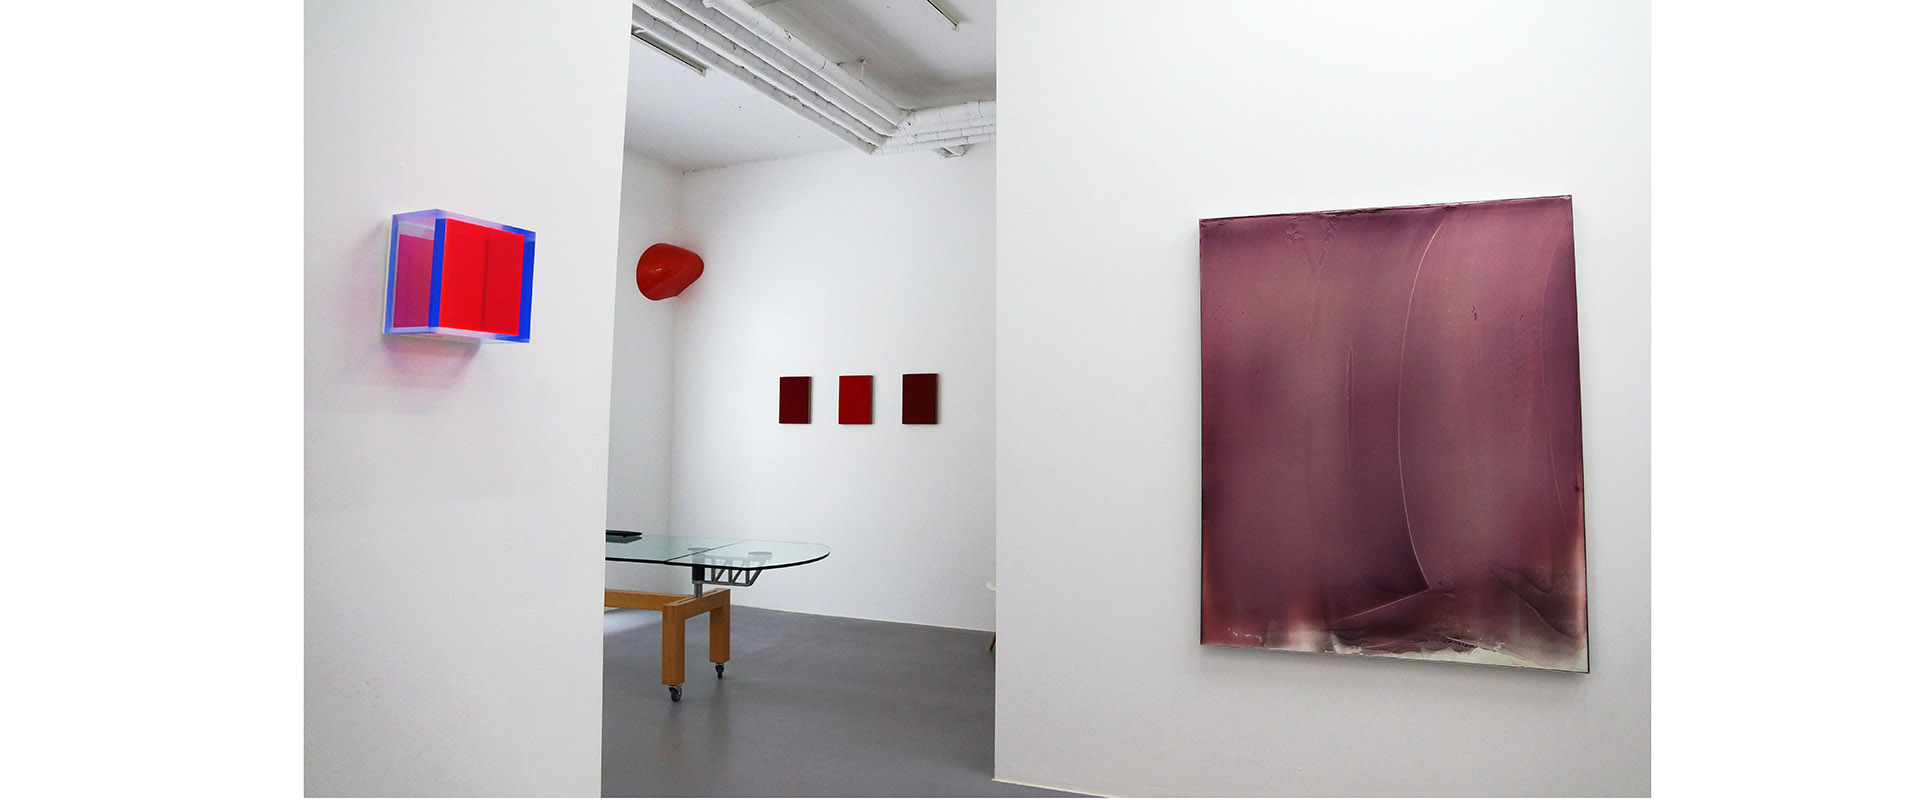 Ausstellungsansicht "Fifty Shades of Red", Galerie Renate Bender 2016